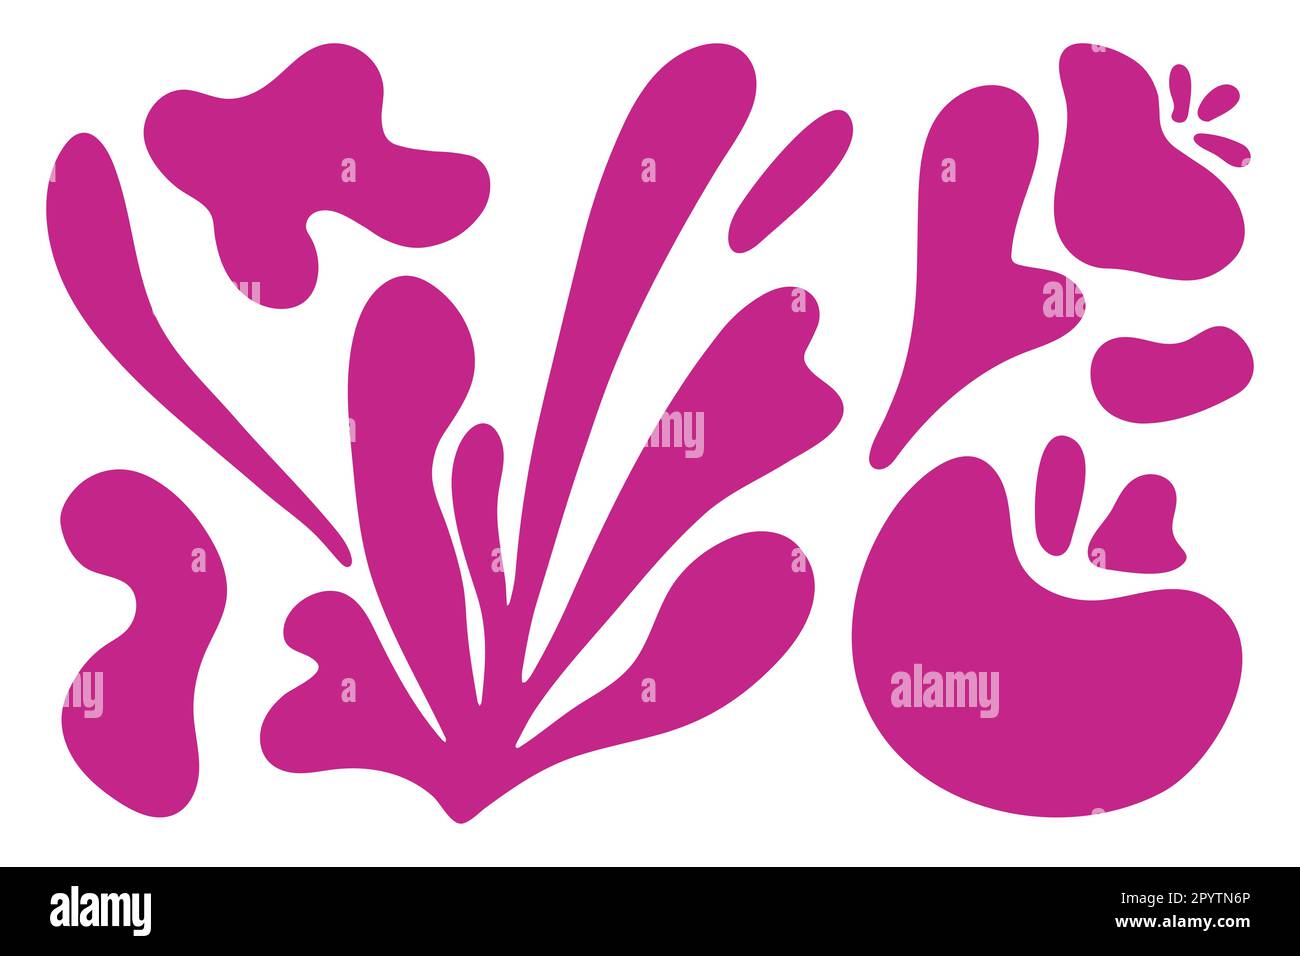 Matisse forme des algues fleuries abstraites dans un style biologique contemporain tendance. Composition Doodle peint fleur et feuille d'acier. Vecteur botanique Illustration de Vecteur